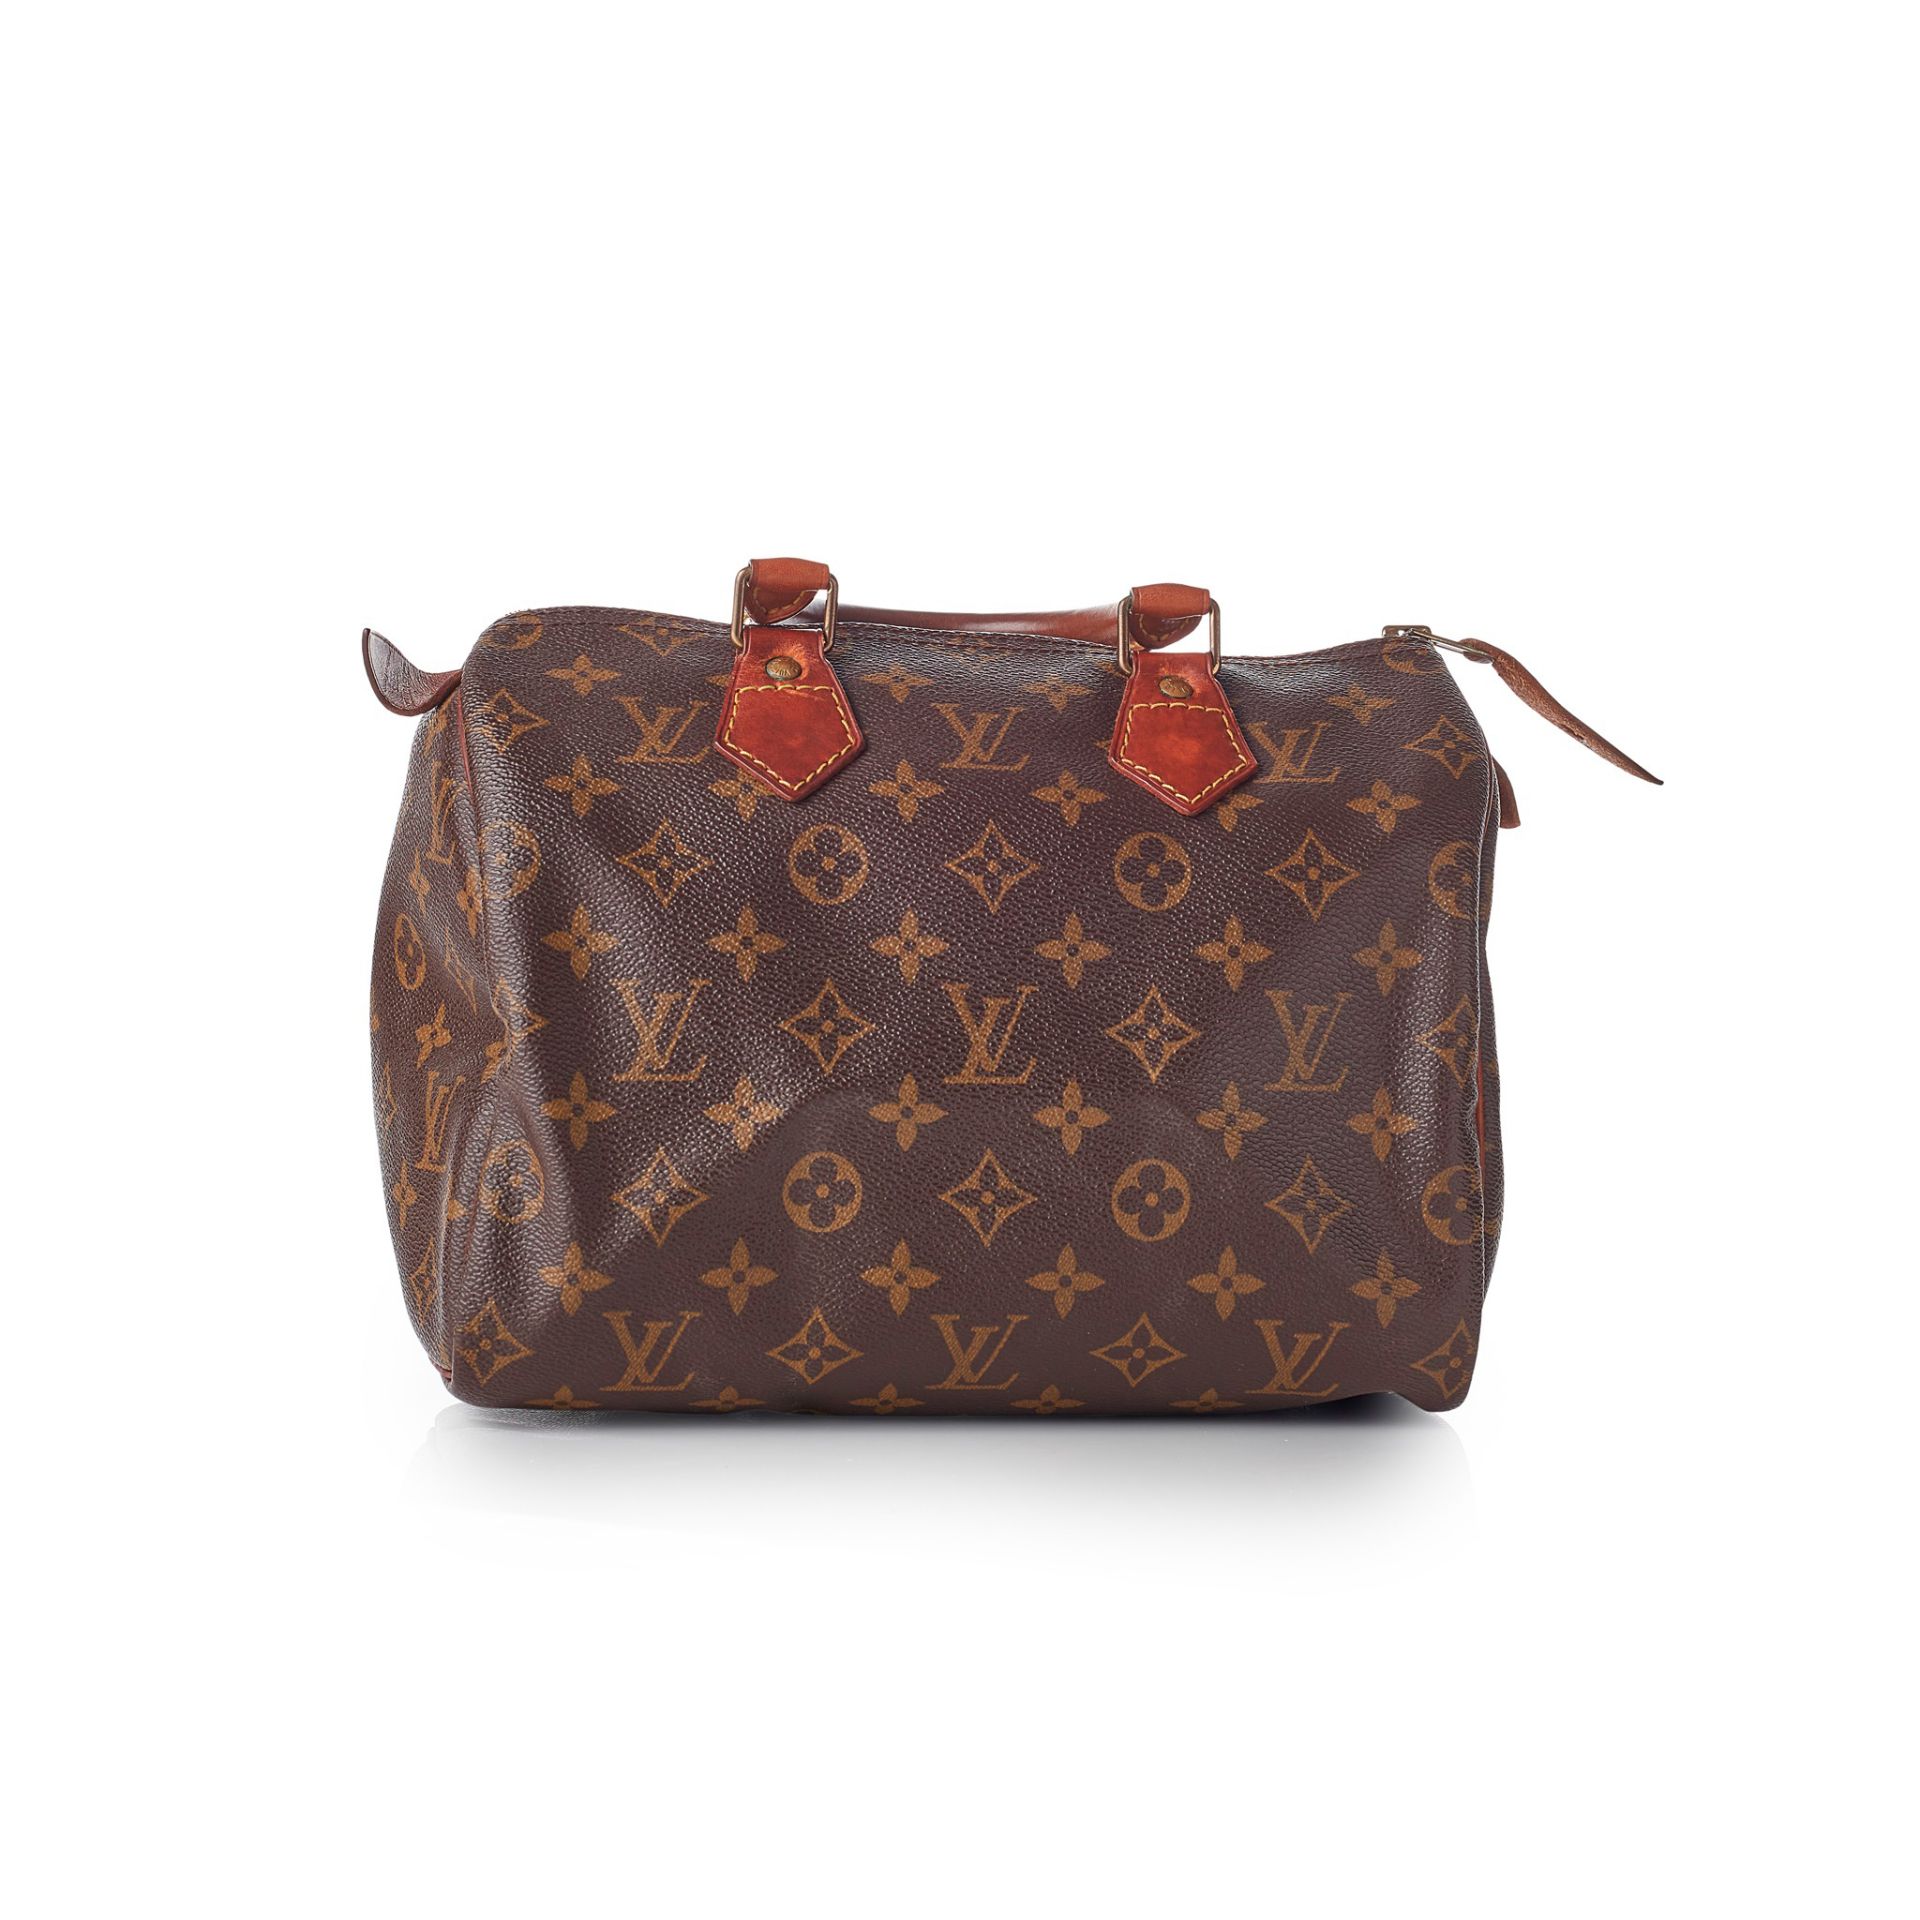 A 'Speedy 25' handbag, Louis Vuitton - Image 2 of 2